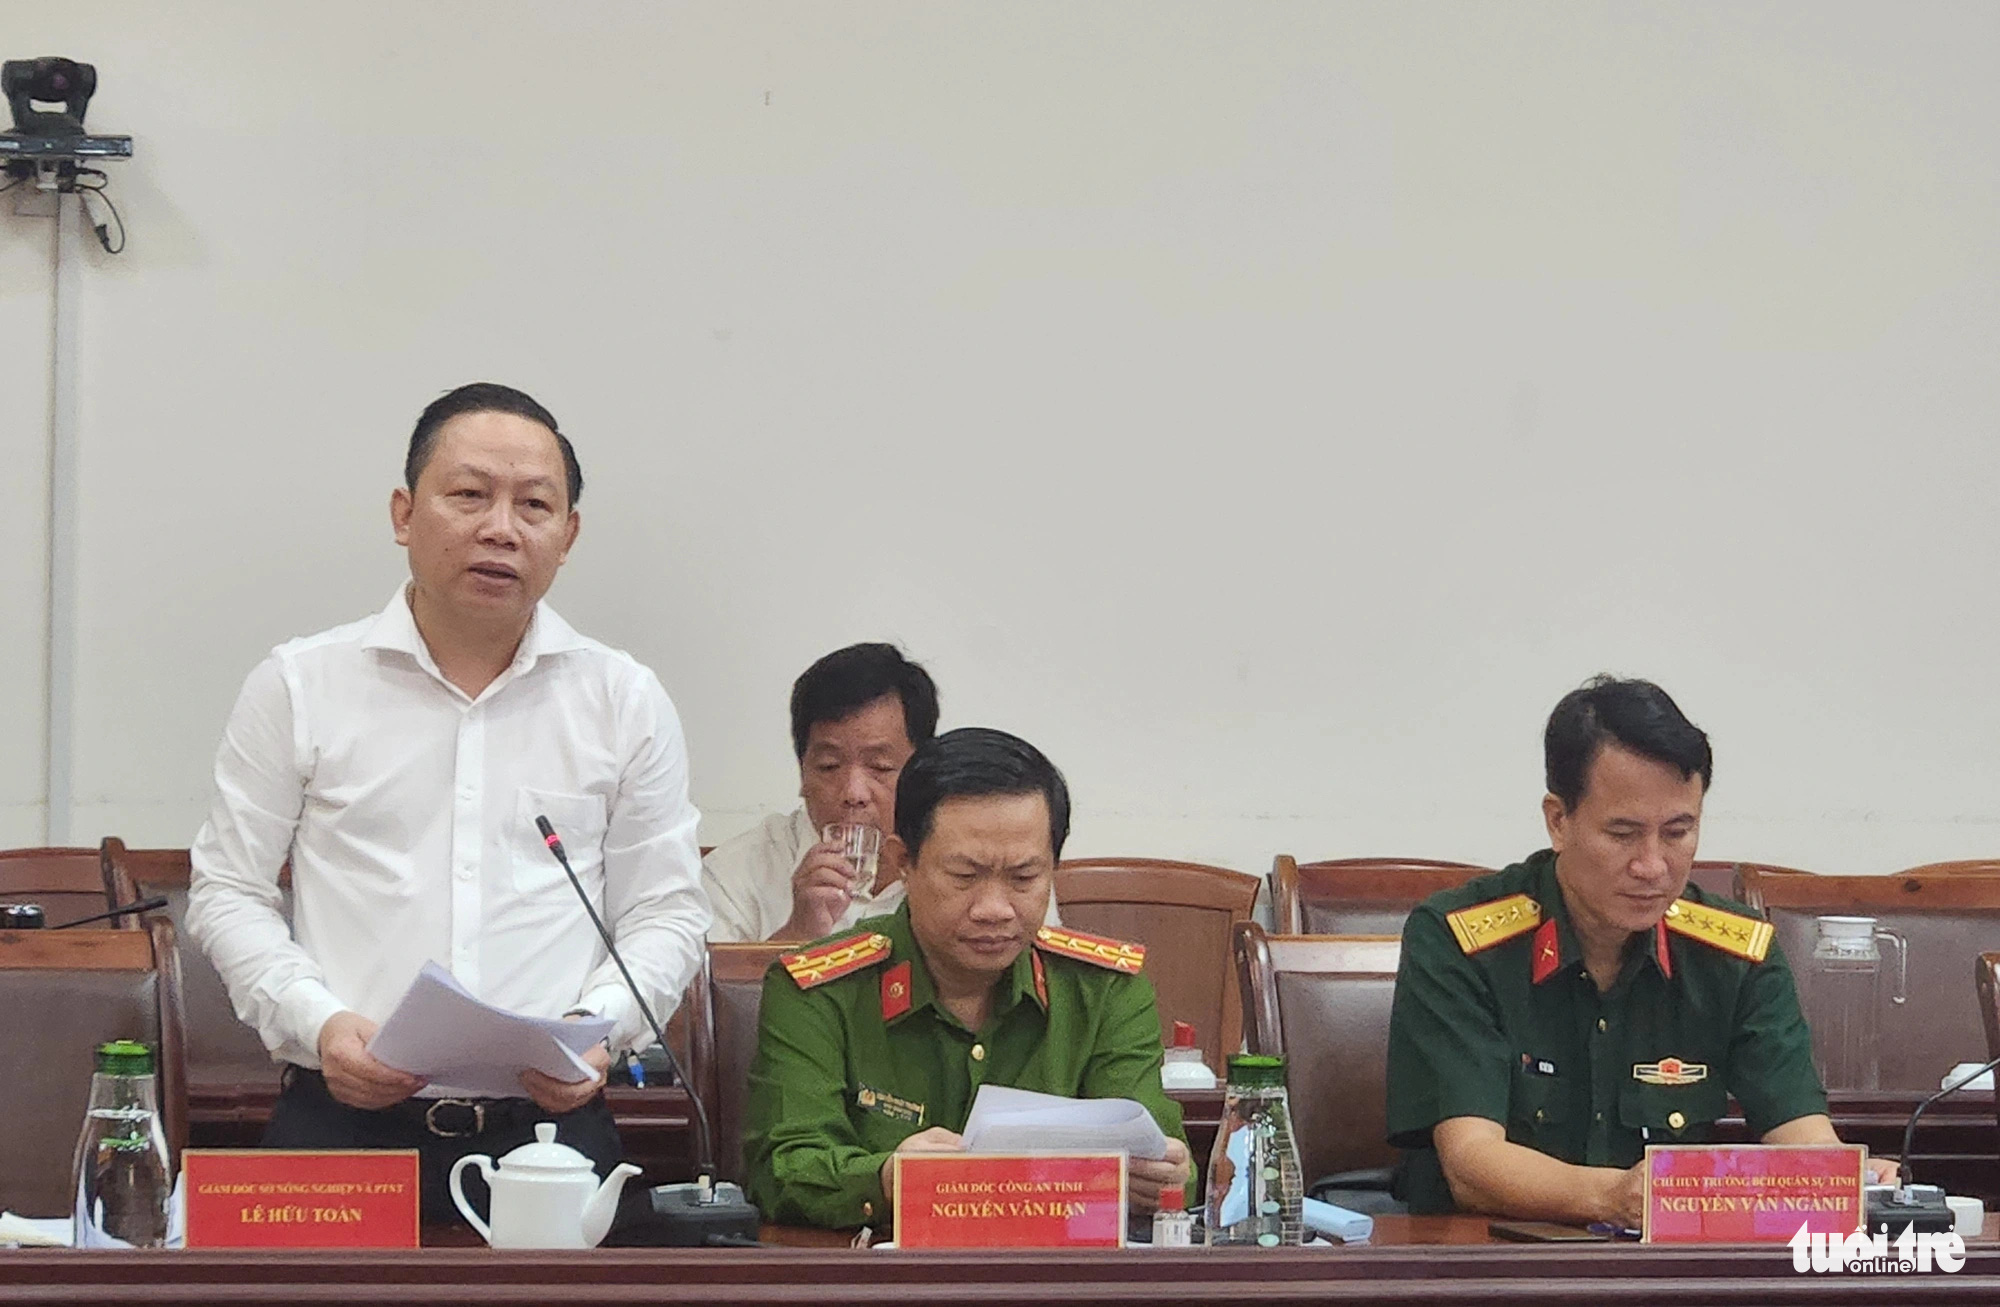 Ông Lê Hữu Toàn - giám đốc Sở Nông nghiệp và Phát triển nông thôn tỉnh Kiên Giang - trình bày báo cáo về hạn mặn - Ảnh: BỬU ĐẤU